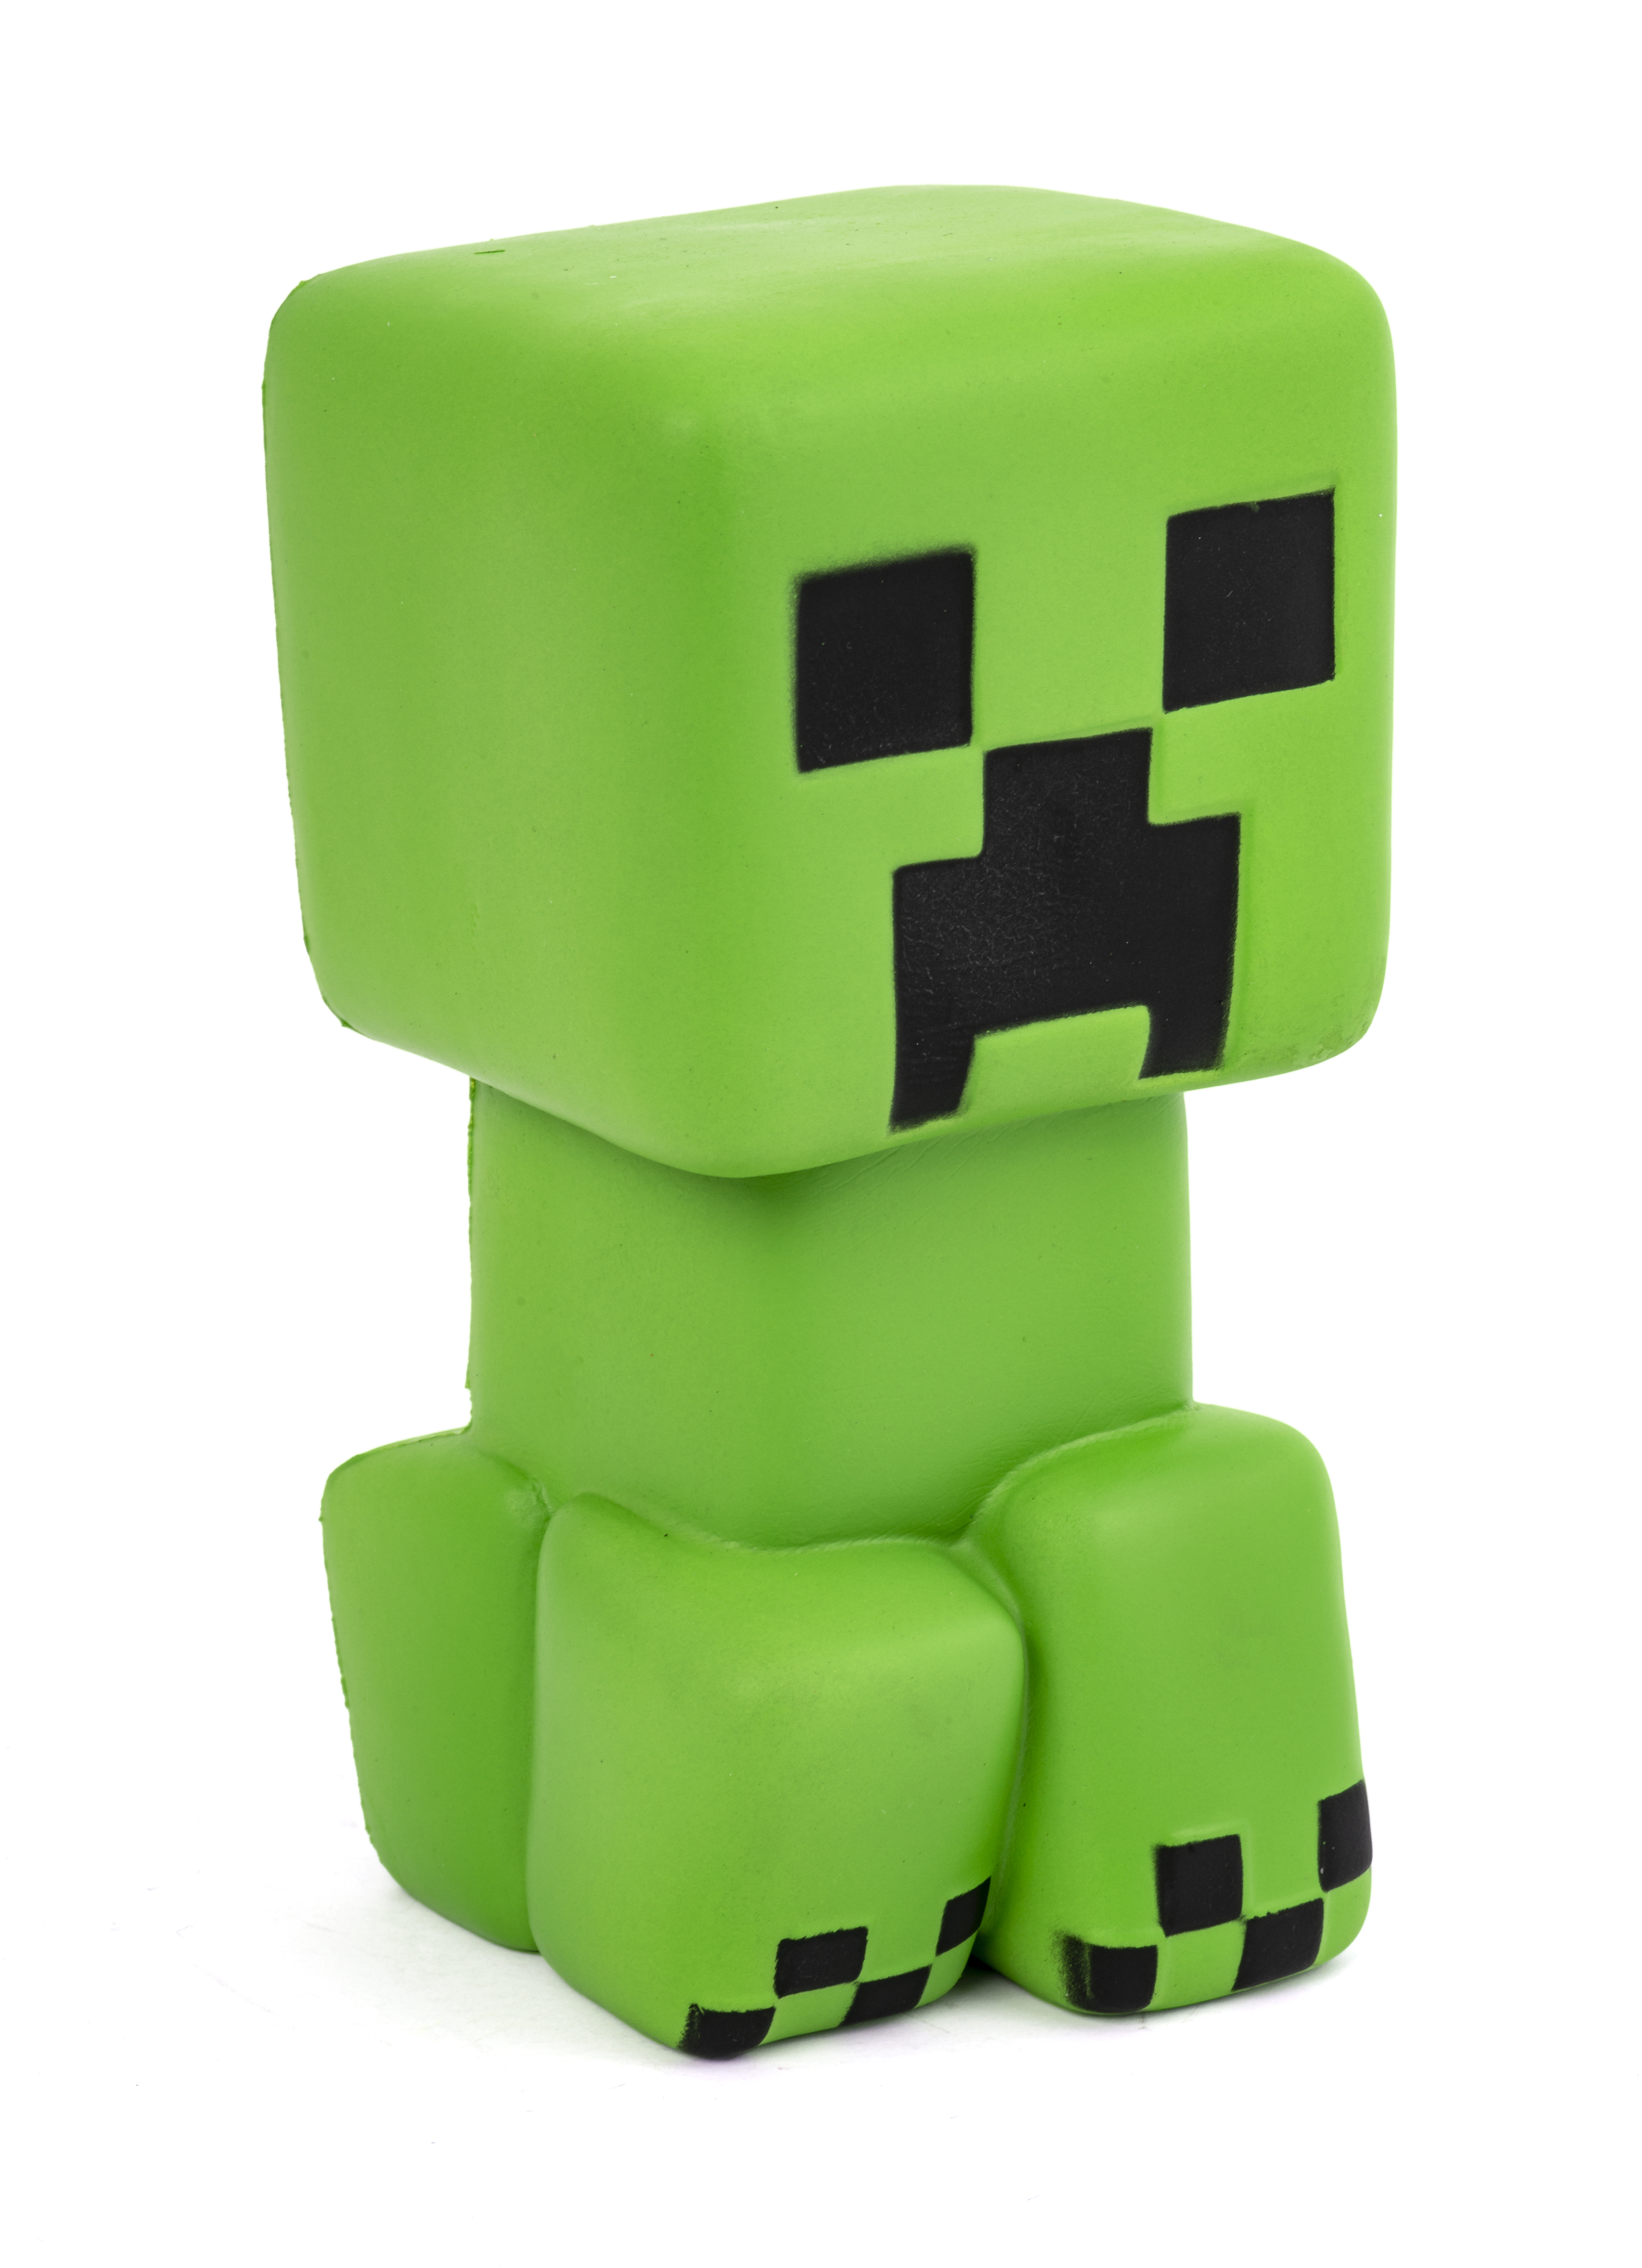 Minecraft SquishMe - Green Creeper